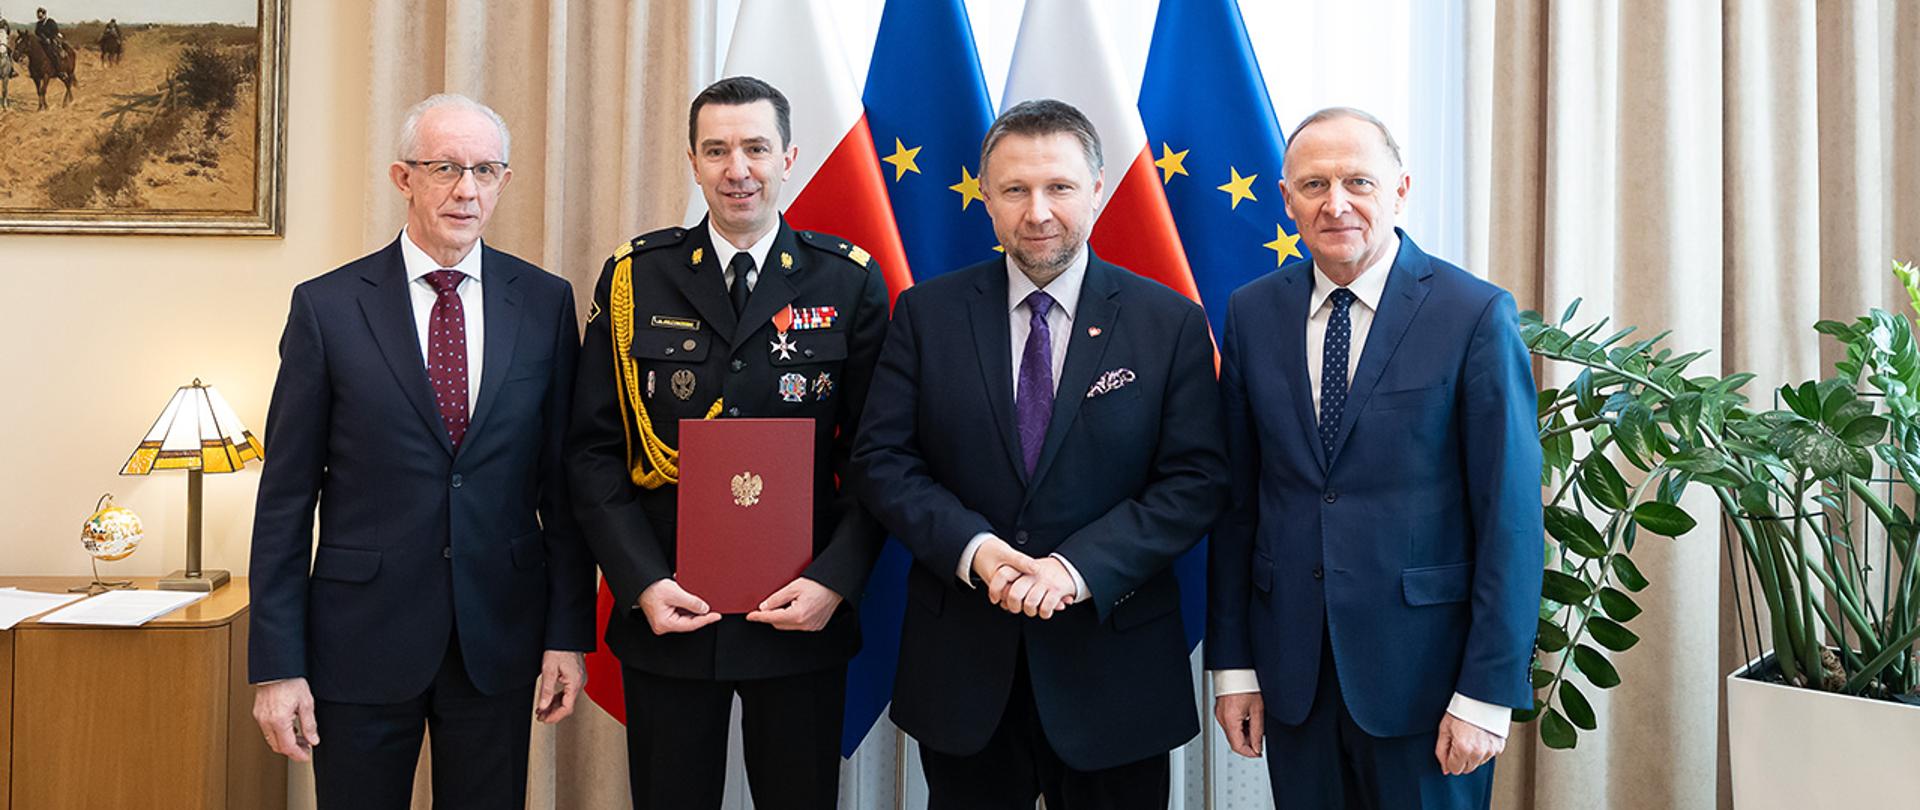 Minister Marcin Kierwiński wręczył powołanie generałowi Mariuszowi Feltynowskiemu na komendanta głównego
Państwowej Straży Pożarnej.